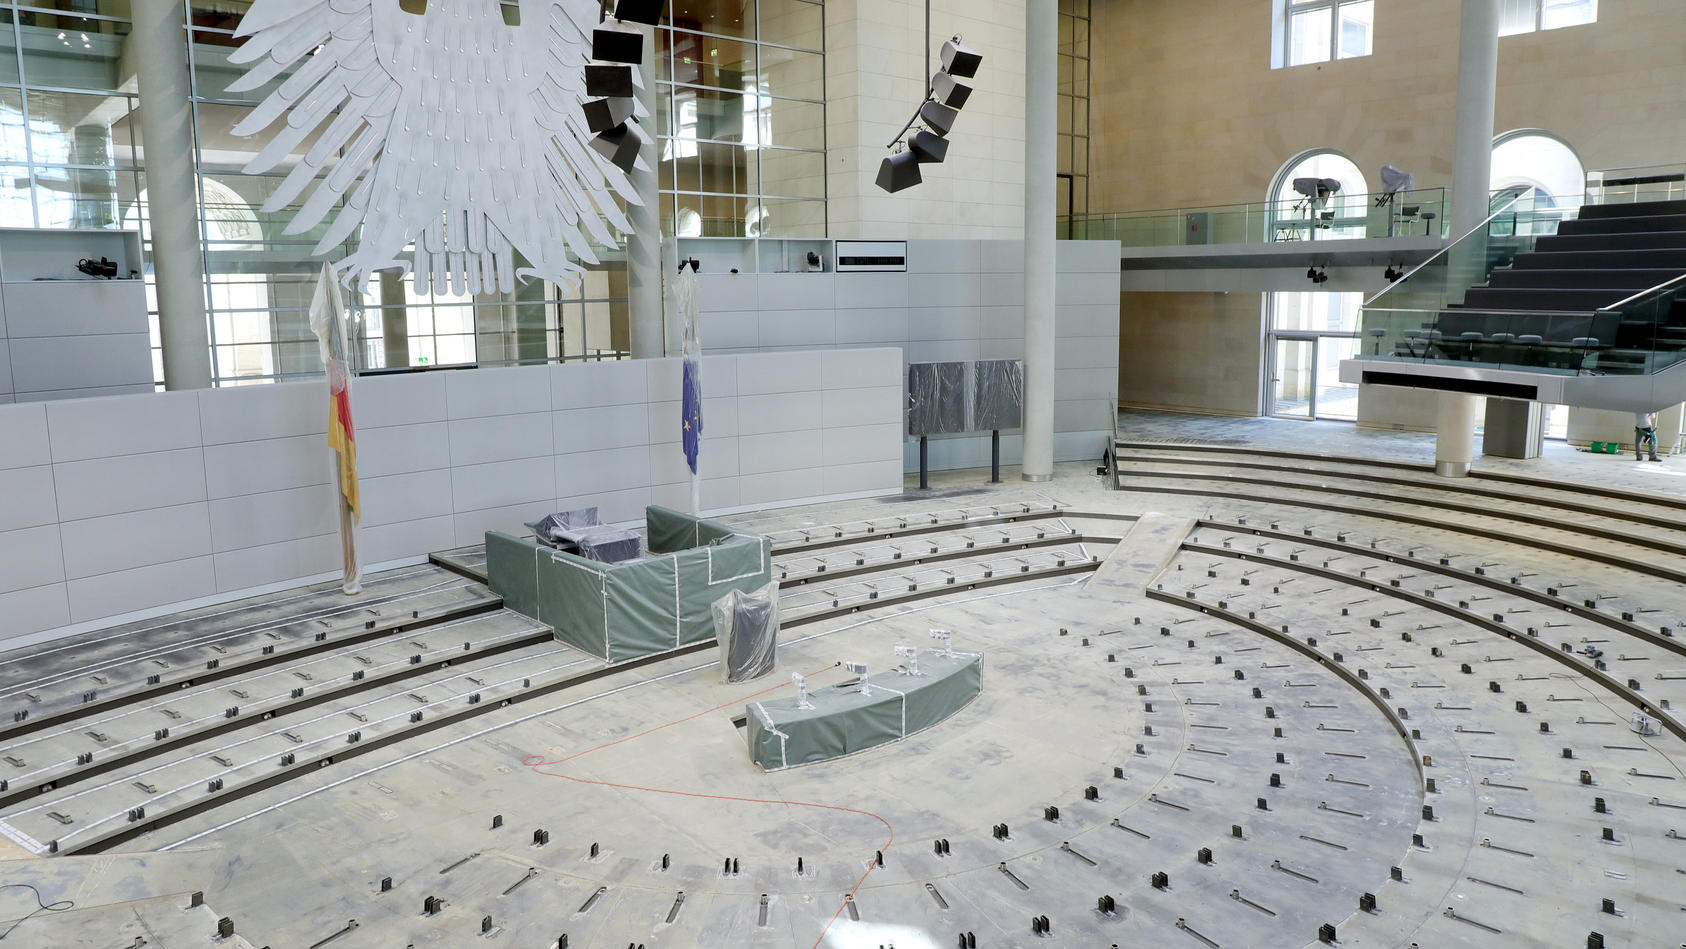 18.07.2019, Berlin: Ohne Stuhlreihen und Teppichboden zeigt sich der Plenarsaal im Deutschen Bundestag. Während der Sommerpause wird das Plenum im Reichstagsgebäude umgebaut. Foto: Wolfgang Kumm/dpa +++ dpa-Bildfunk +++